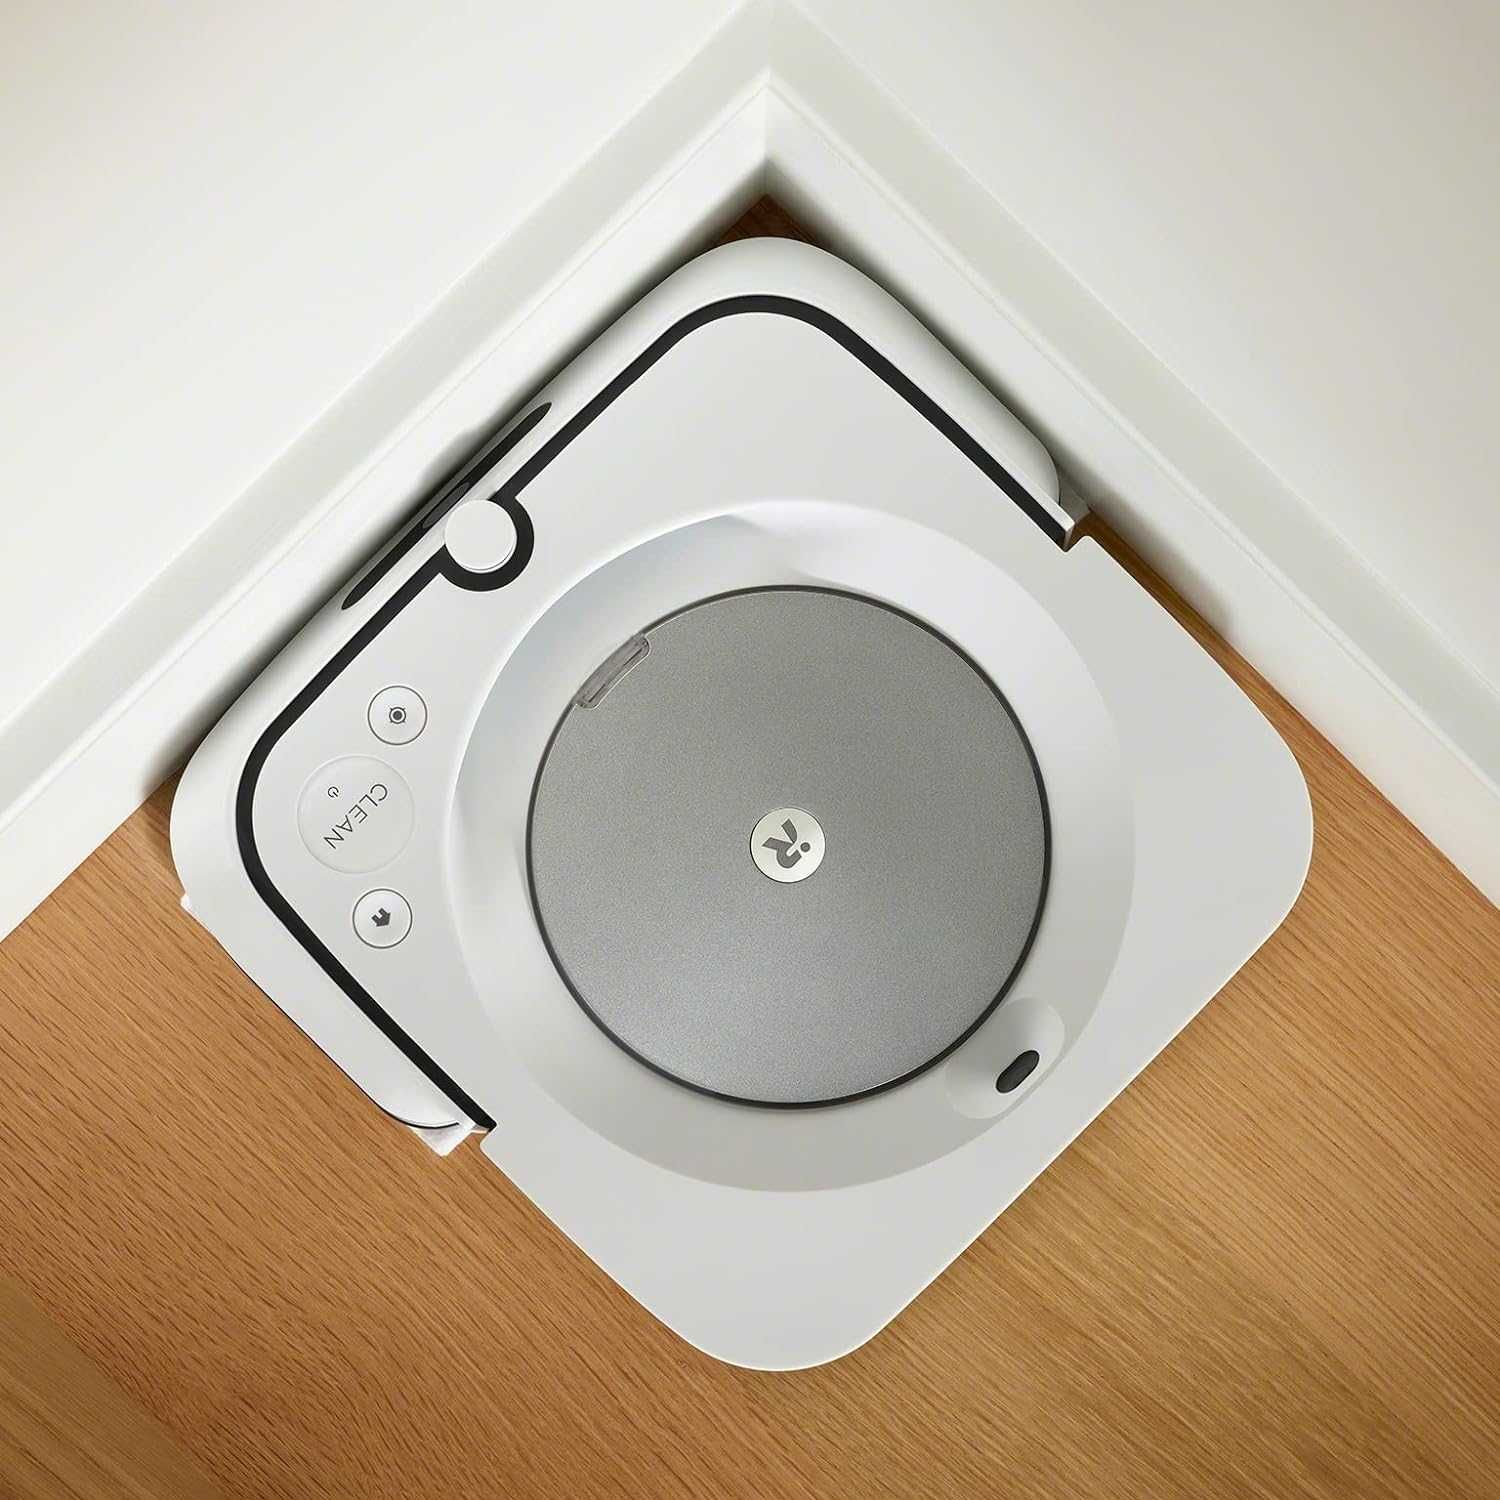 робот пилосос iRobot Compatible Roomba 900 Braava m6134 M6